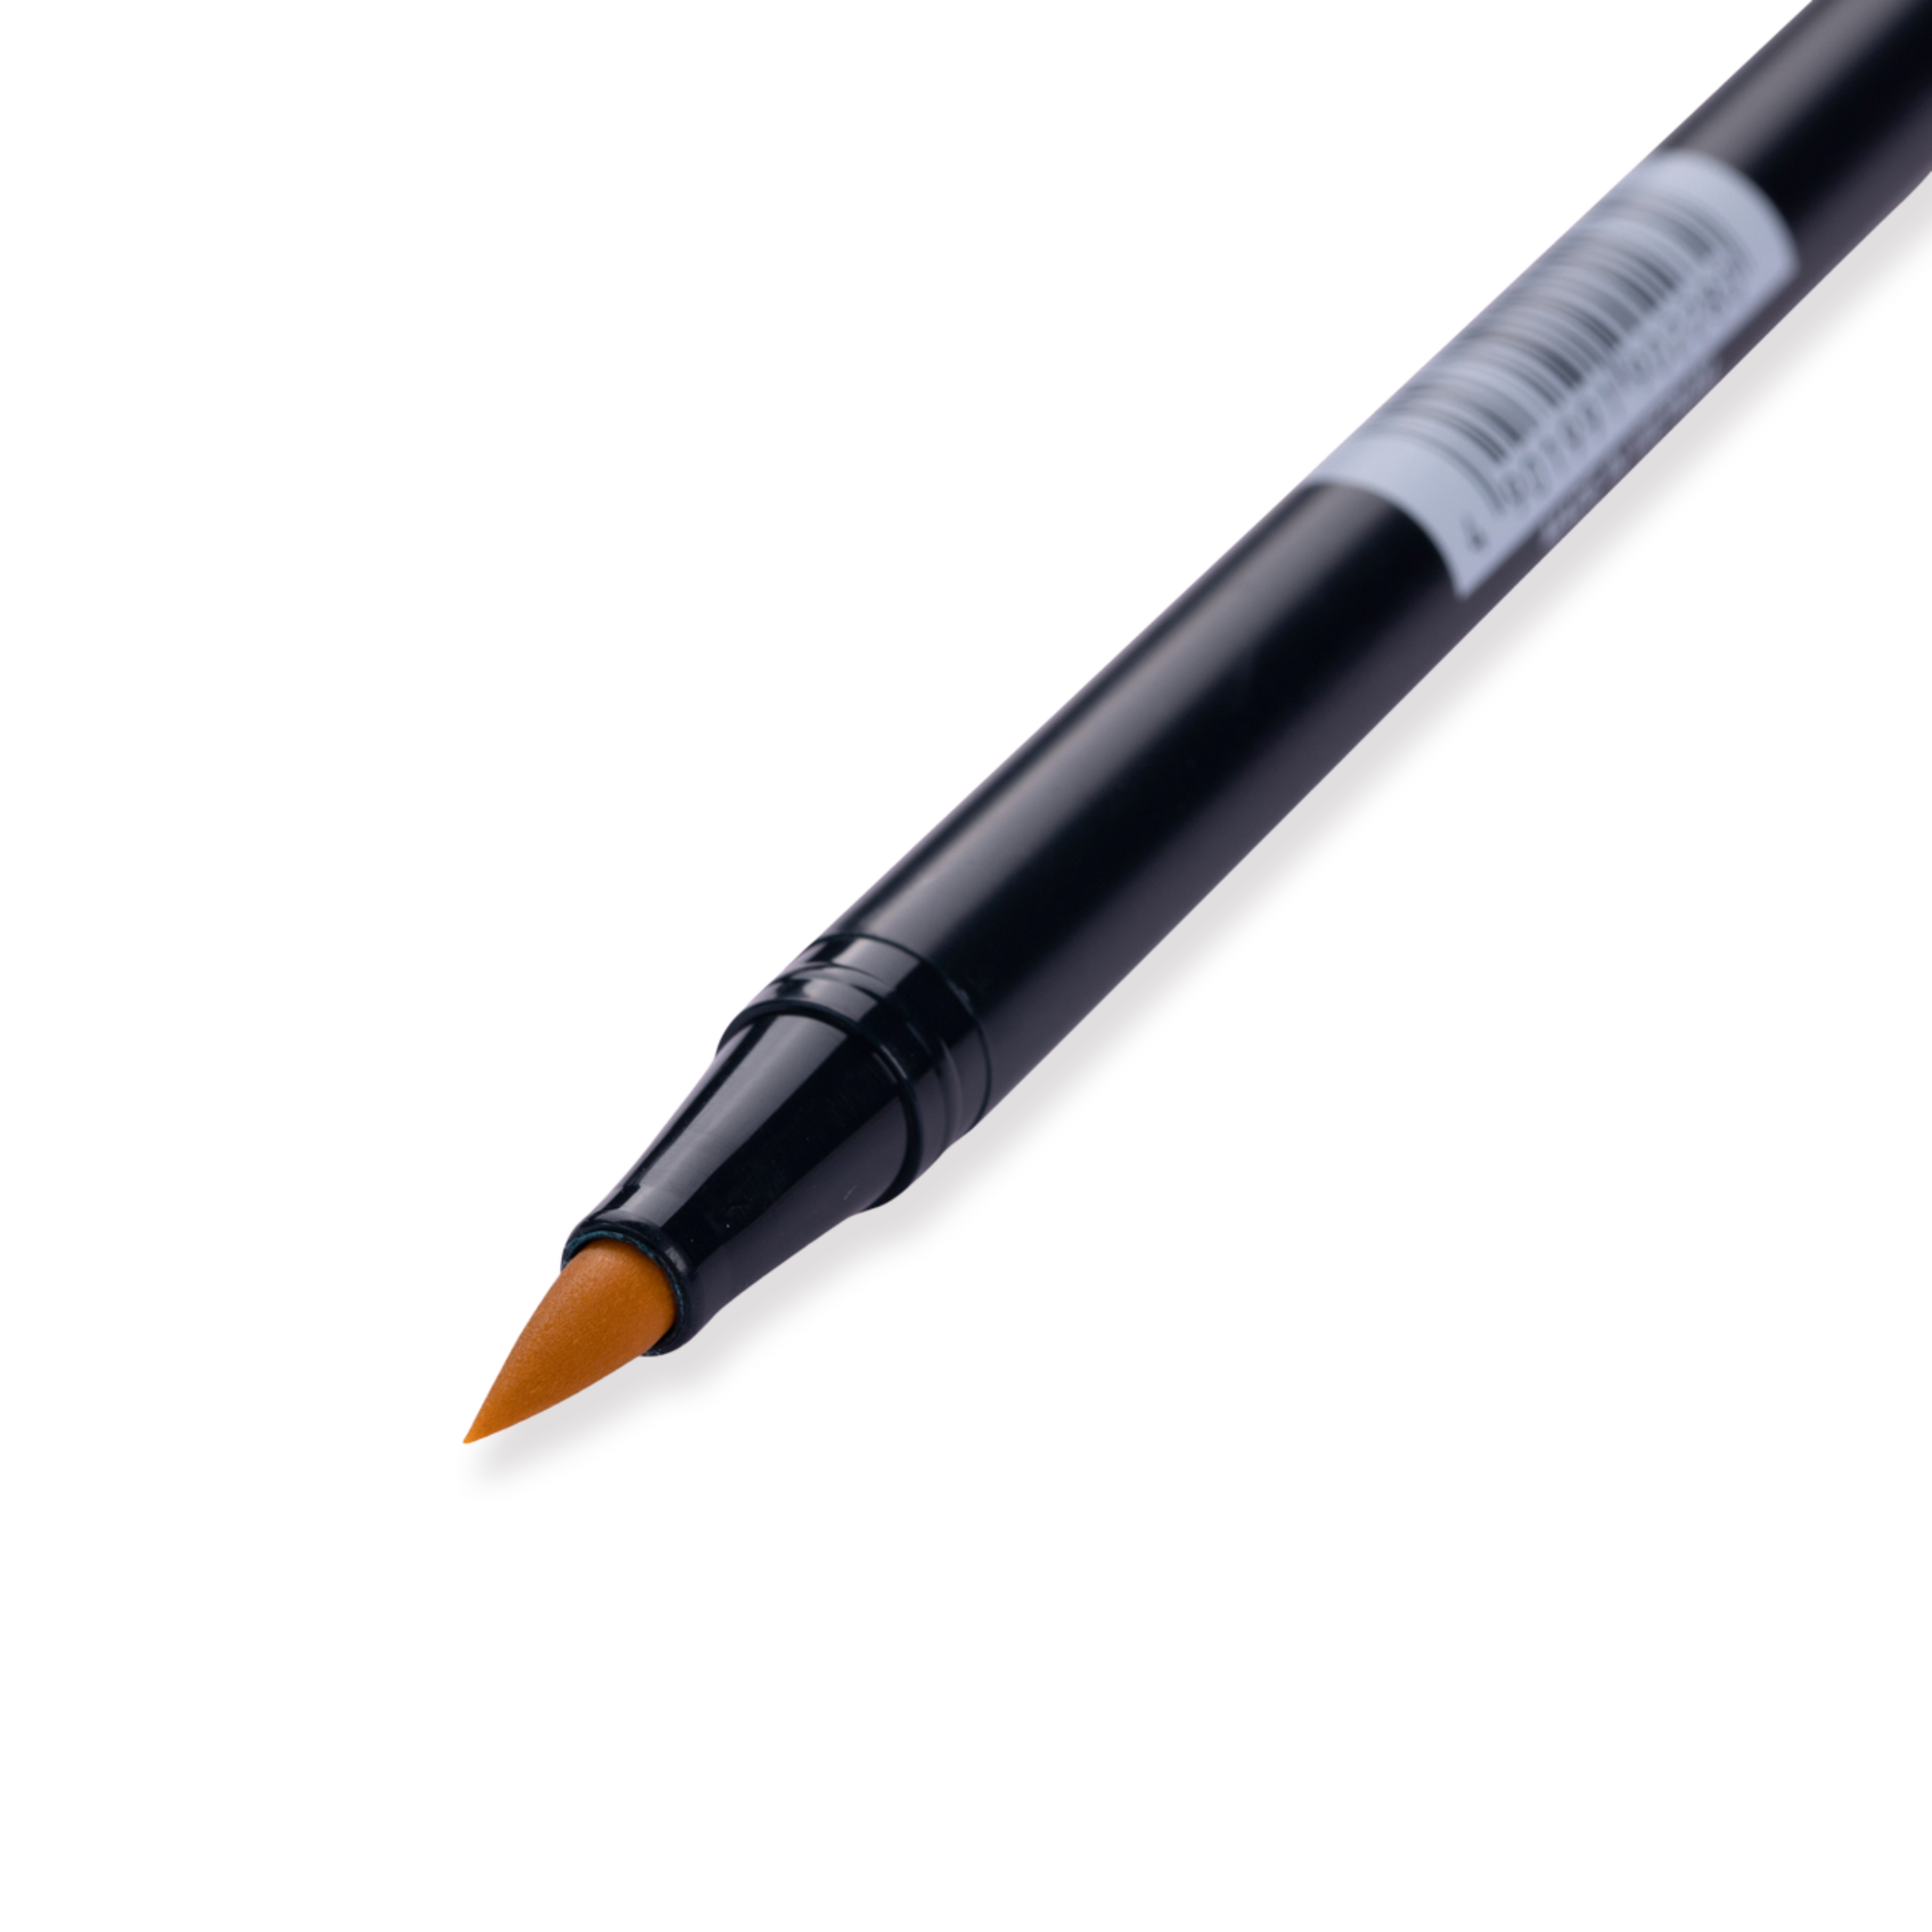 Tombow Dual Brush Pen - 991 - Light Ochre